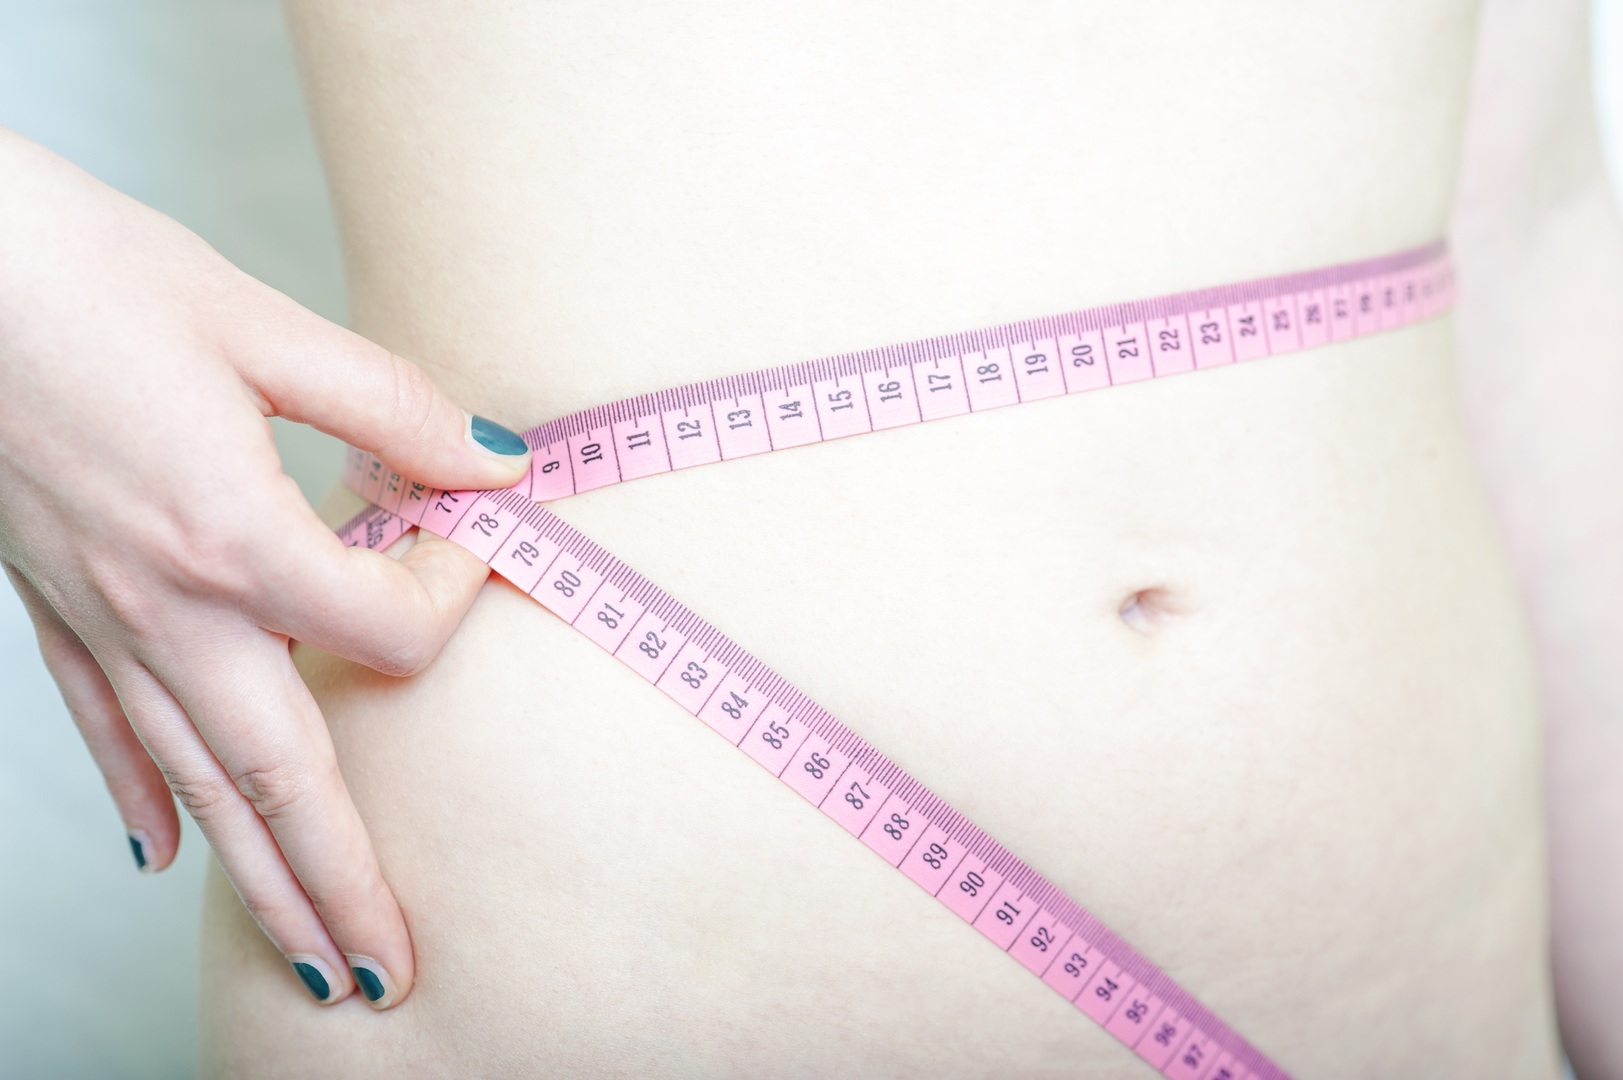 Dietas exprés e inhibidores del apetito: El peligro por querer ser delgado